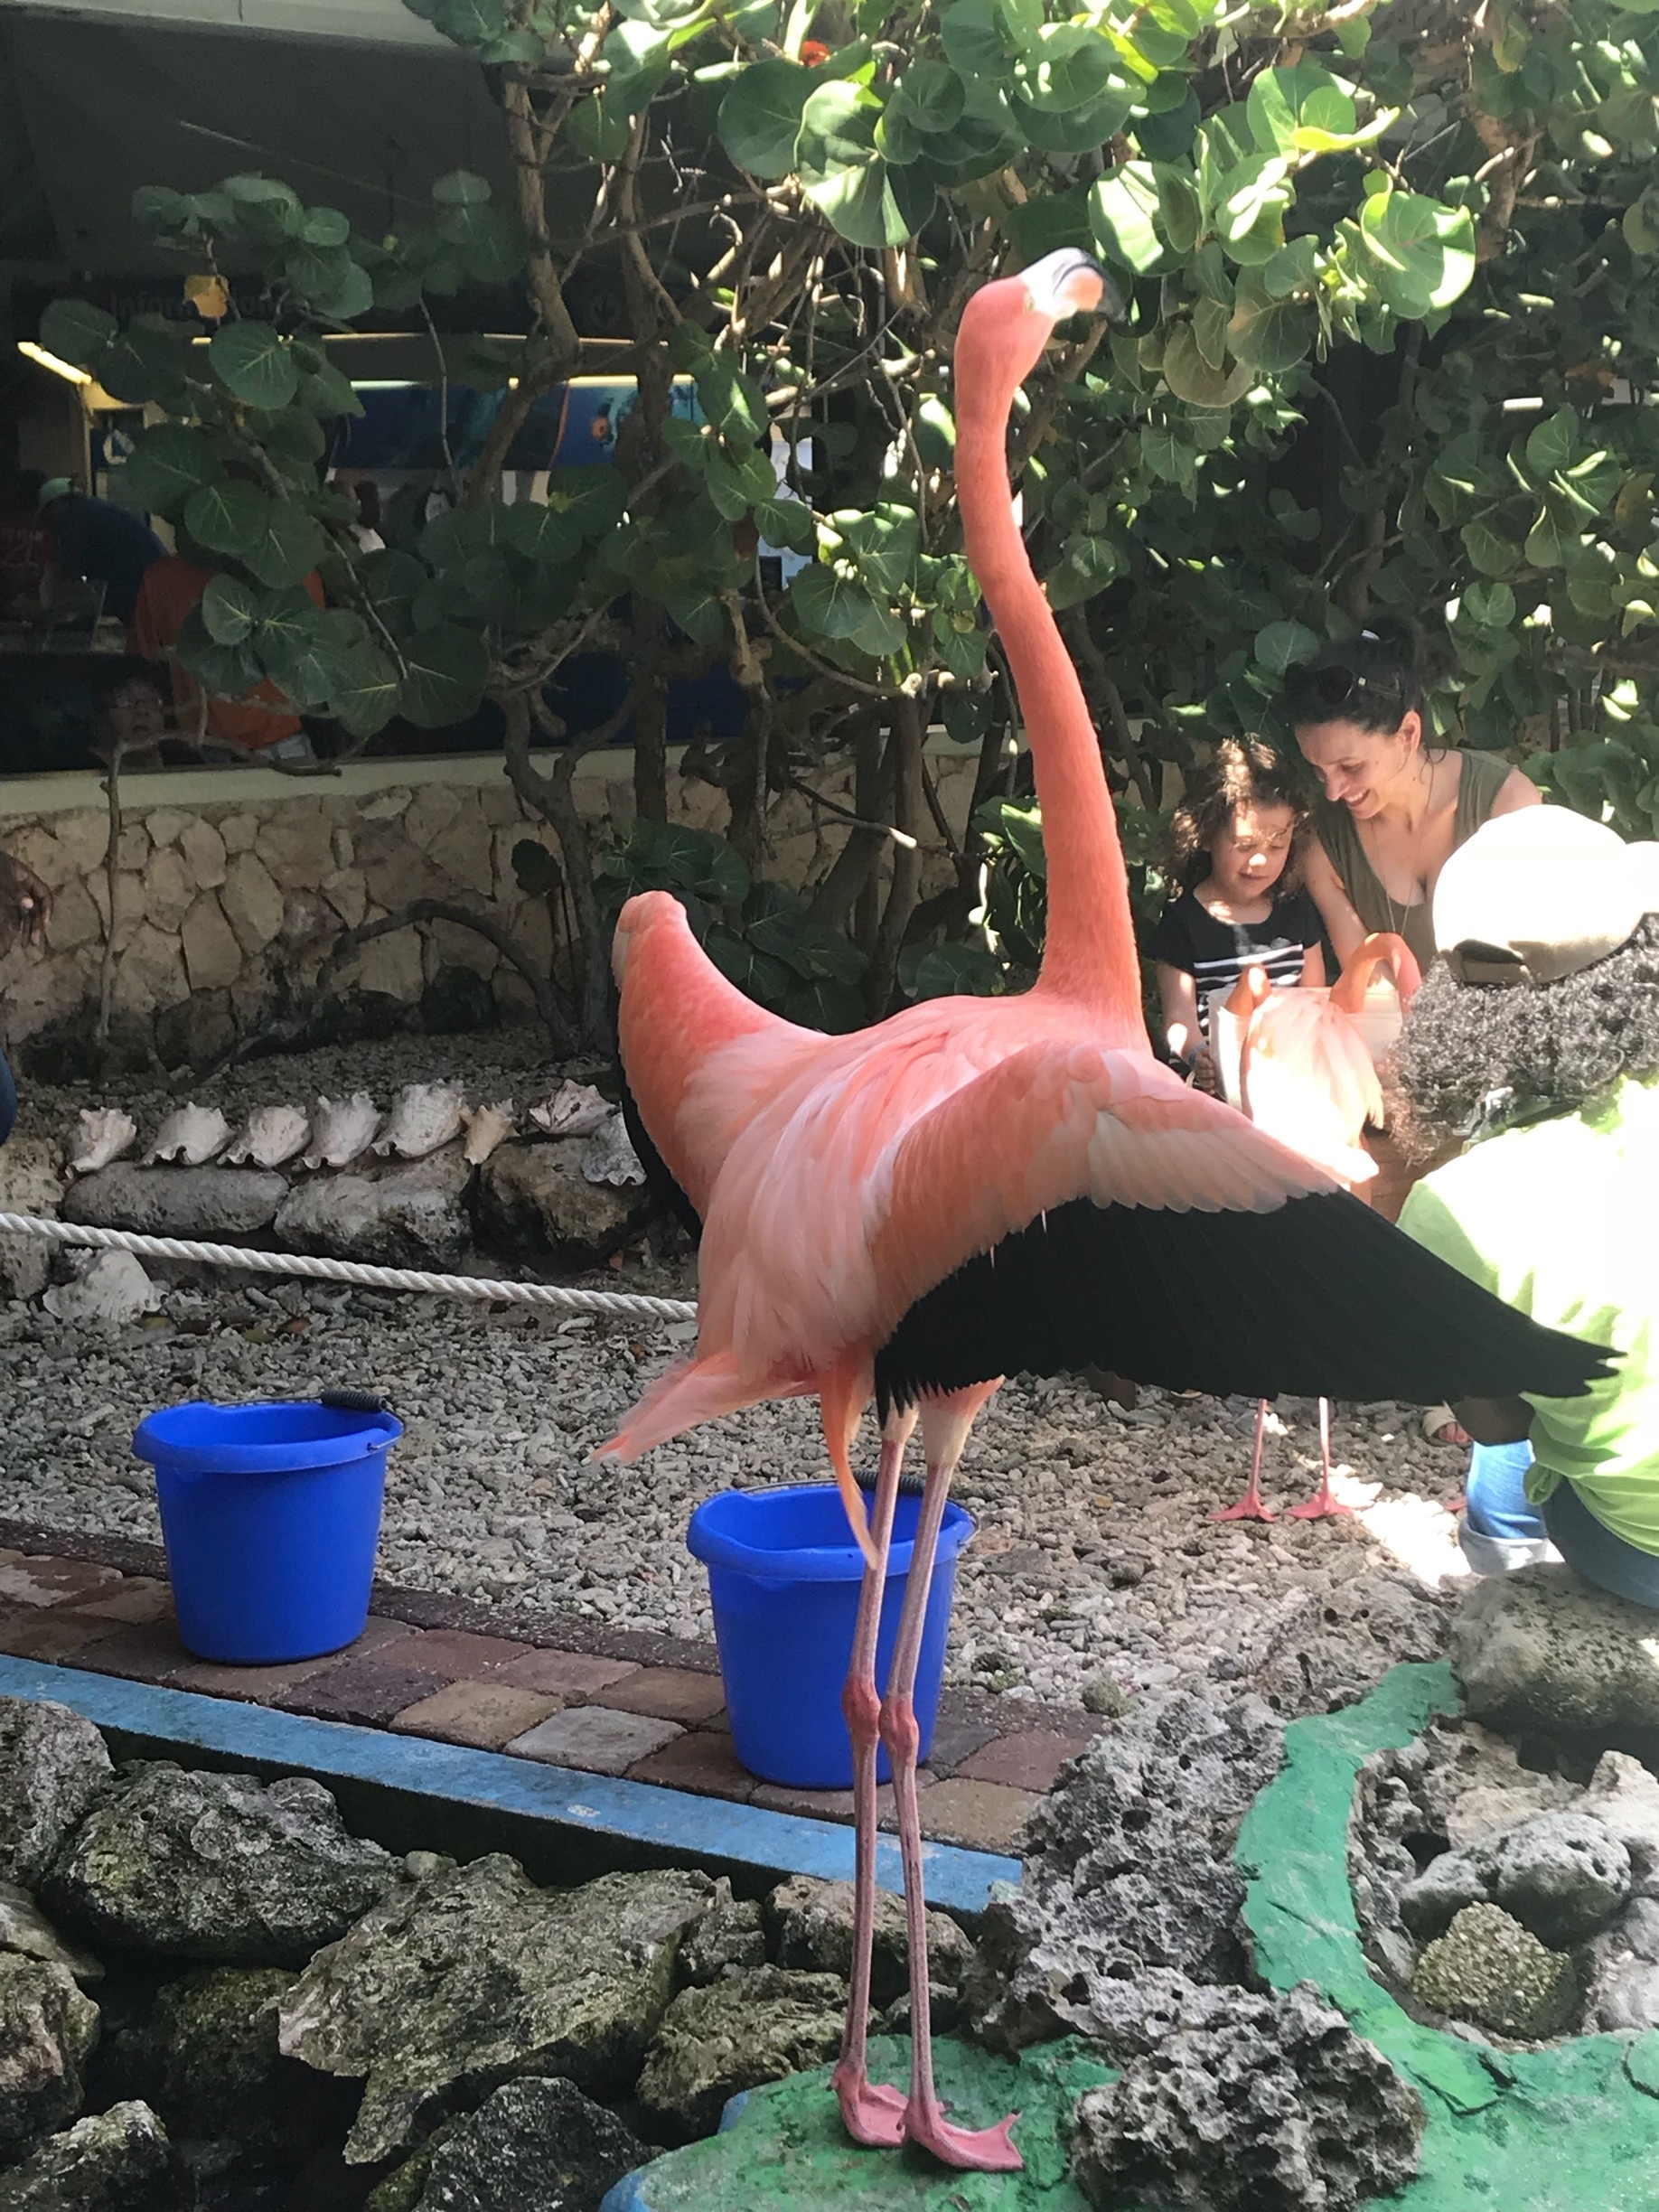 Flamingo feeding time 💗